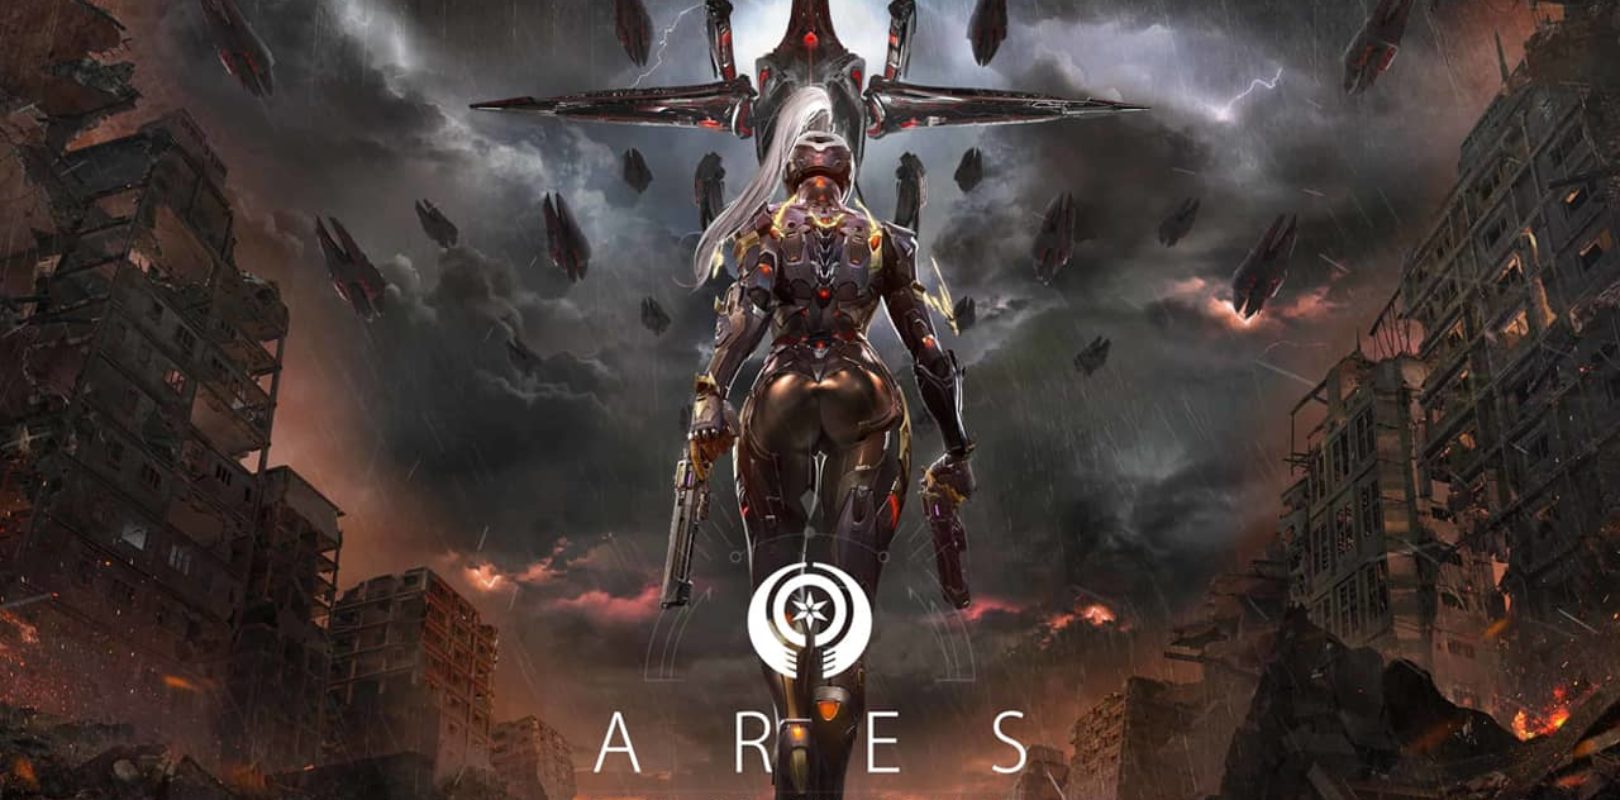 Ares przedstawia klasy postaci. To nowy futurystyczny MMORPG 